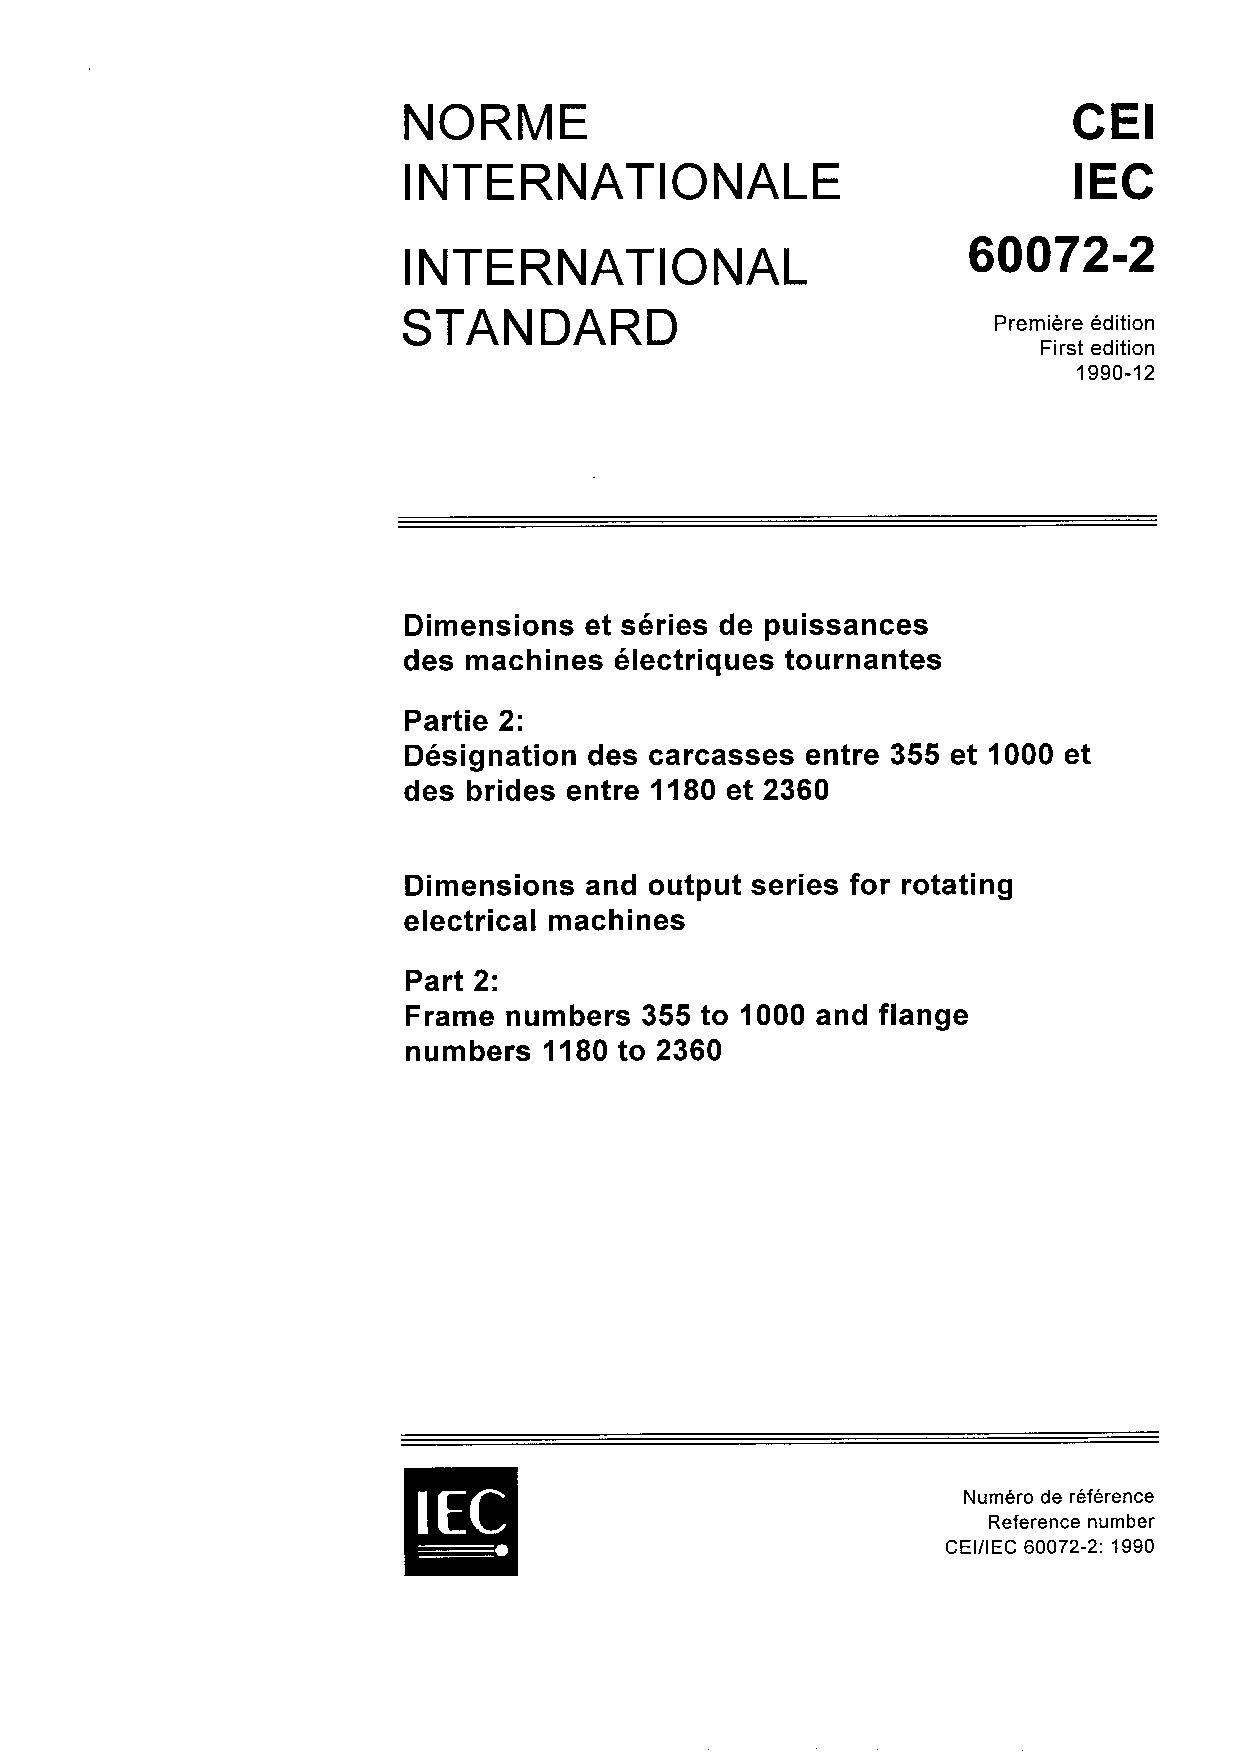 IEC 60072-2:1990